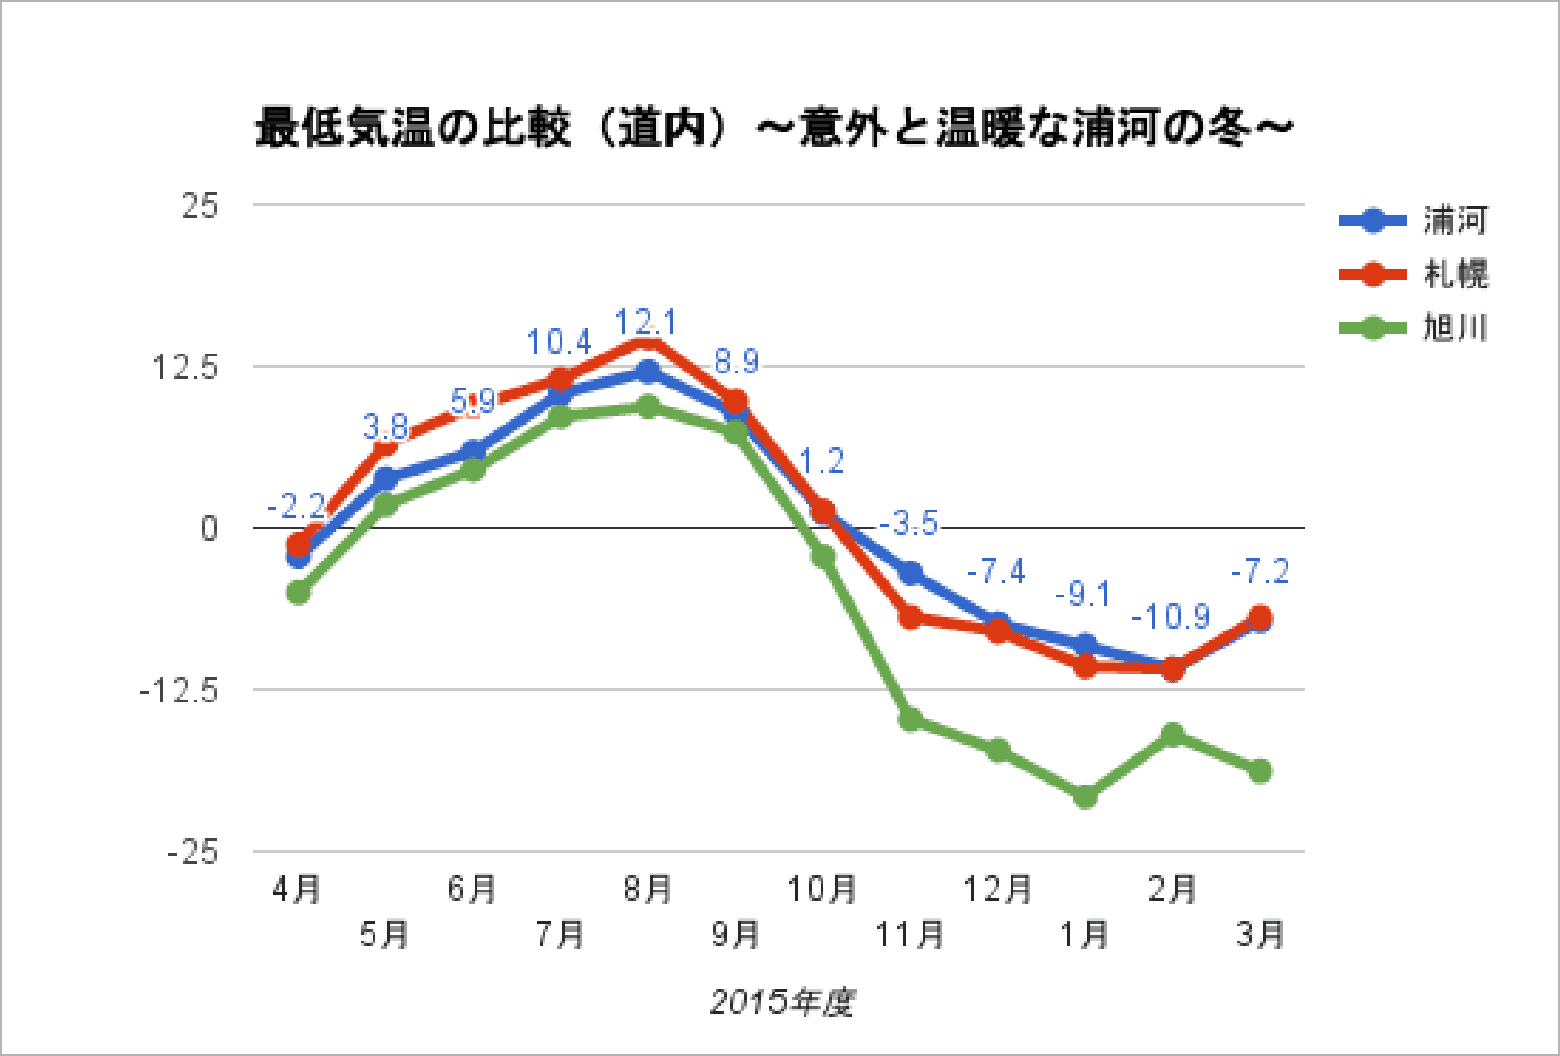 浦河と札幌と旭川の最低気温の比較（道内）。意外と温暖な浦河の冬